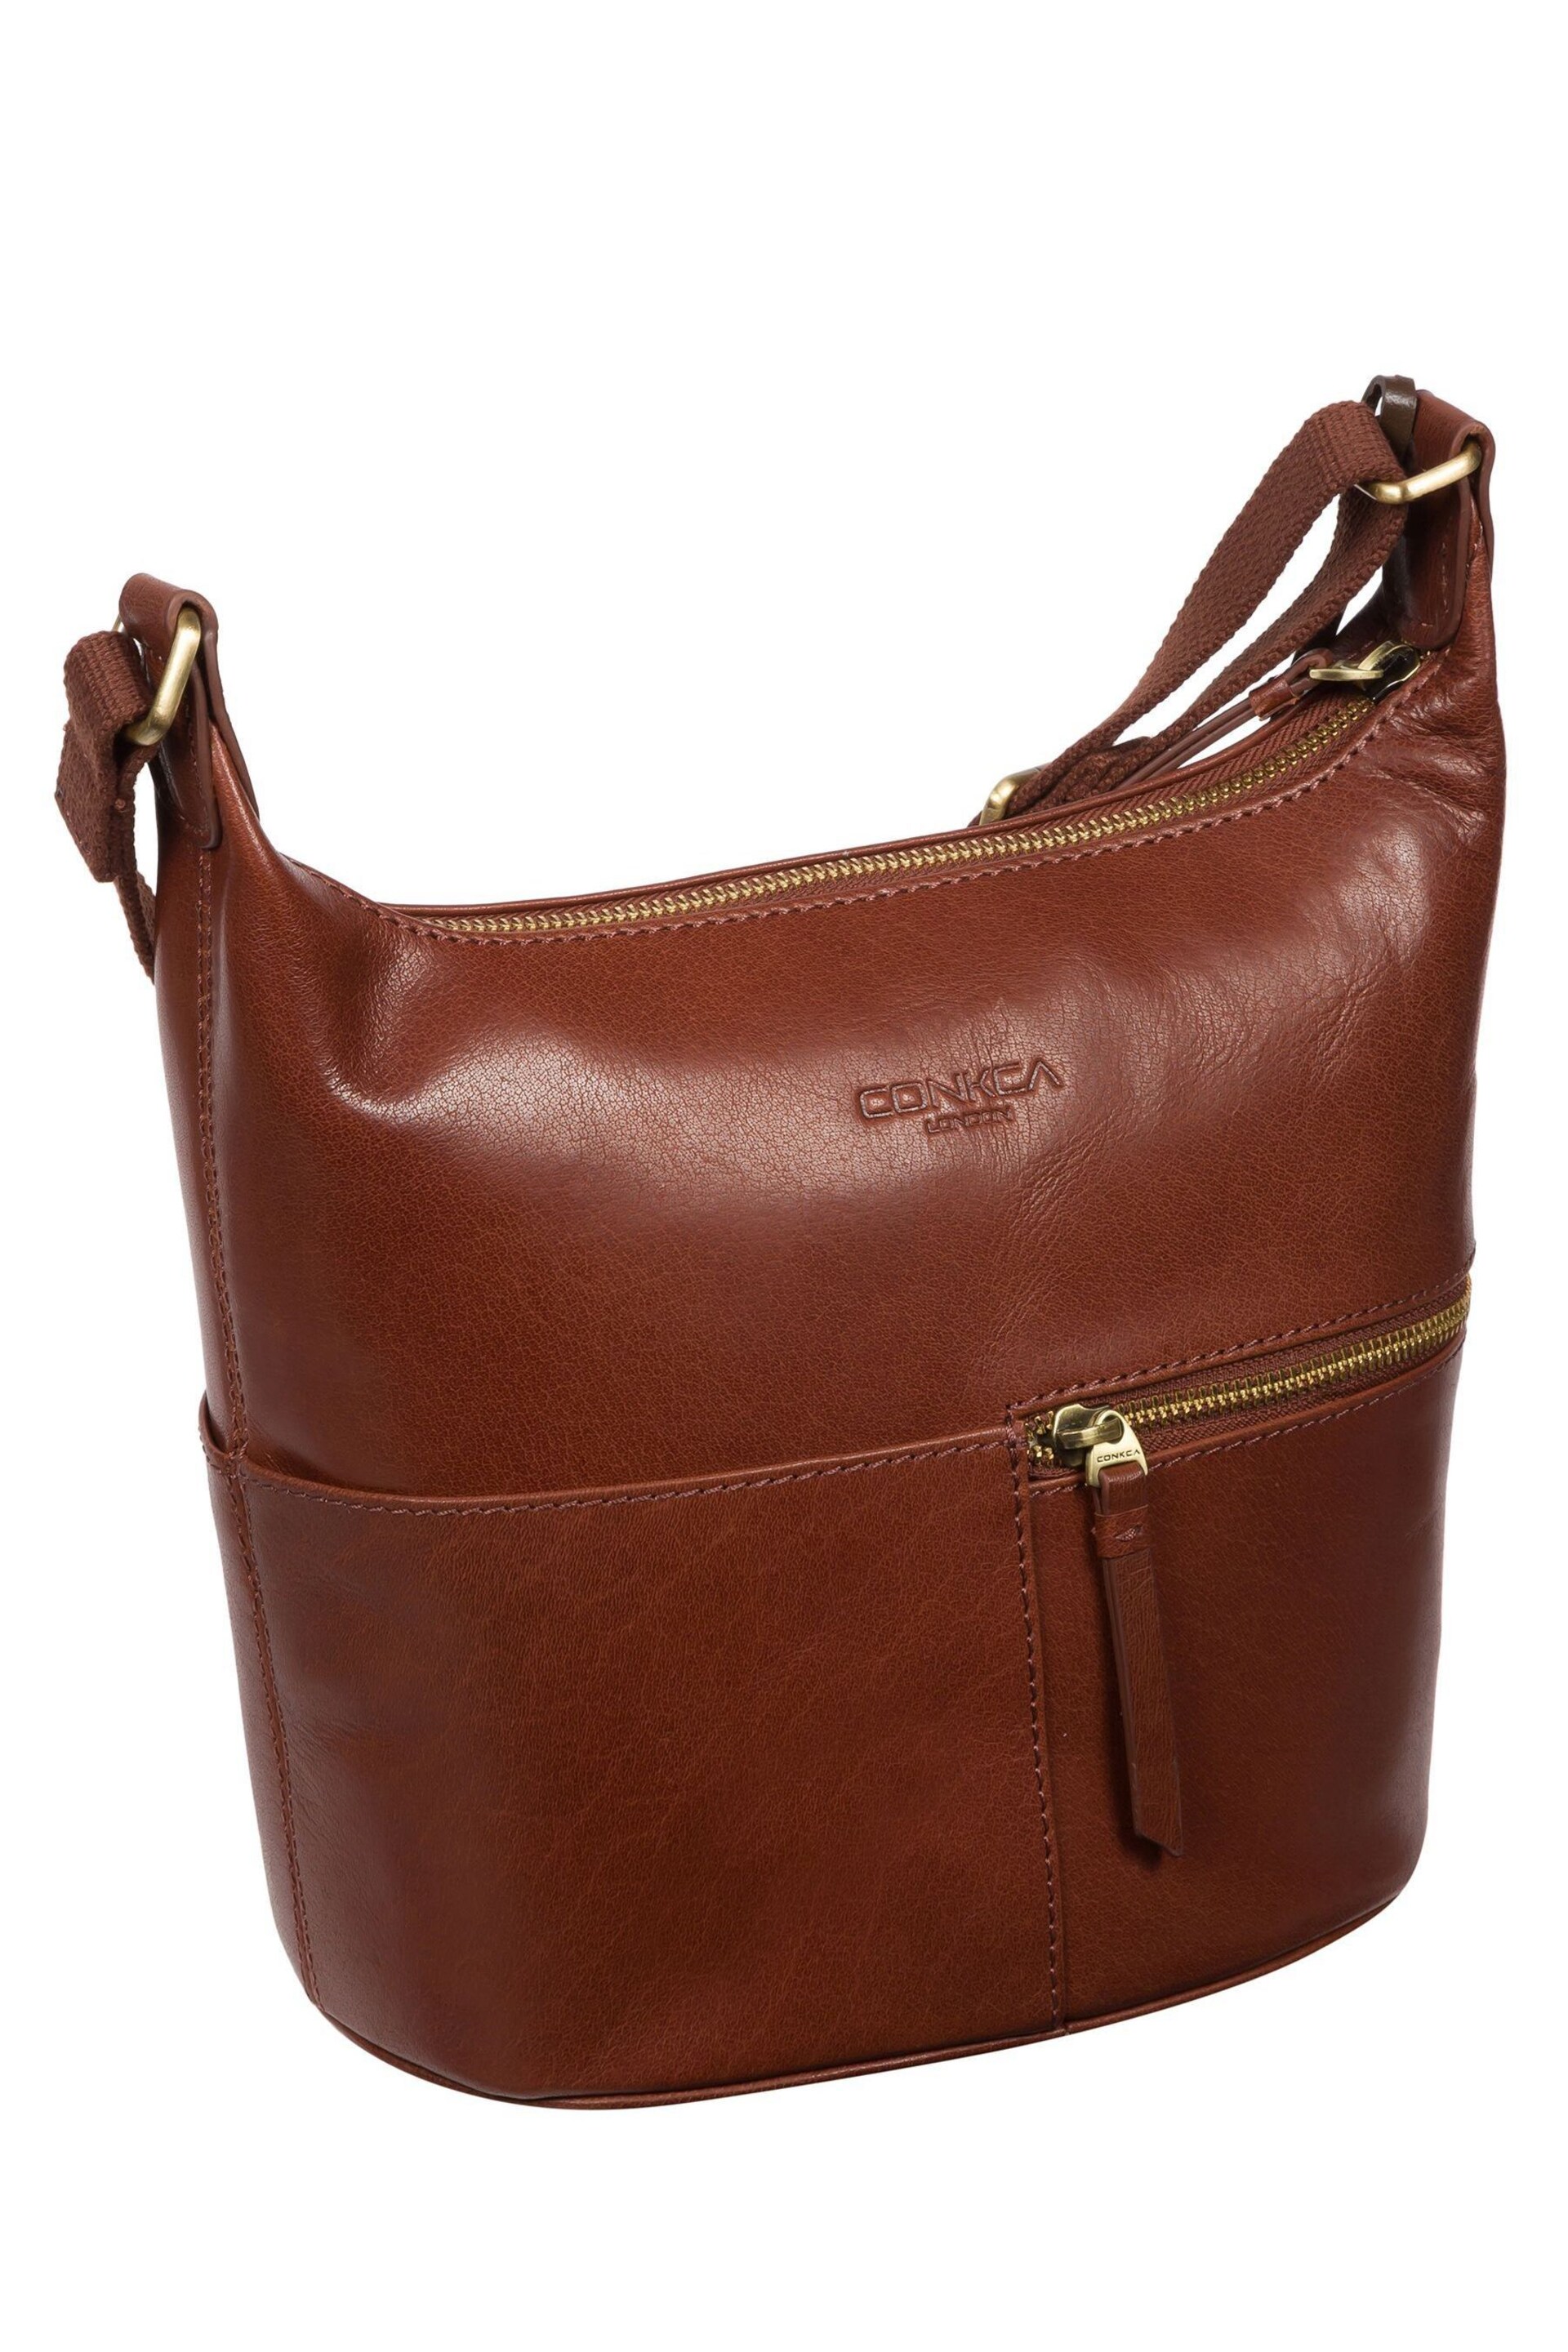 Conkca Little Kristin Leather Shoulder Bag - Image 3 of 6